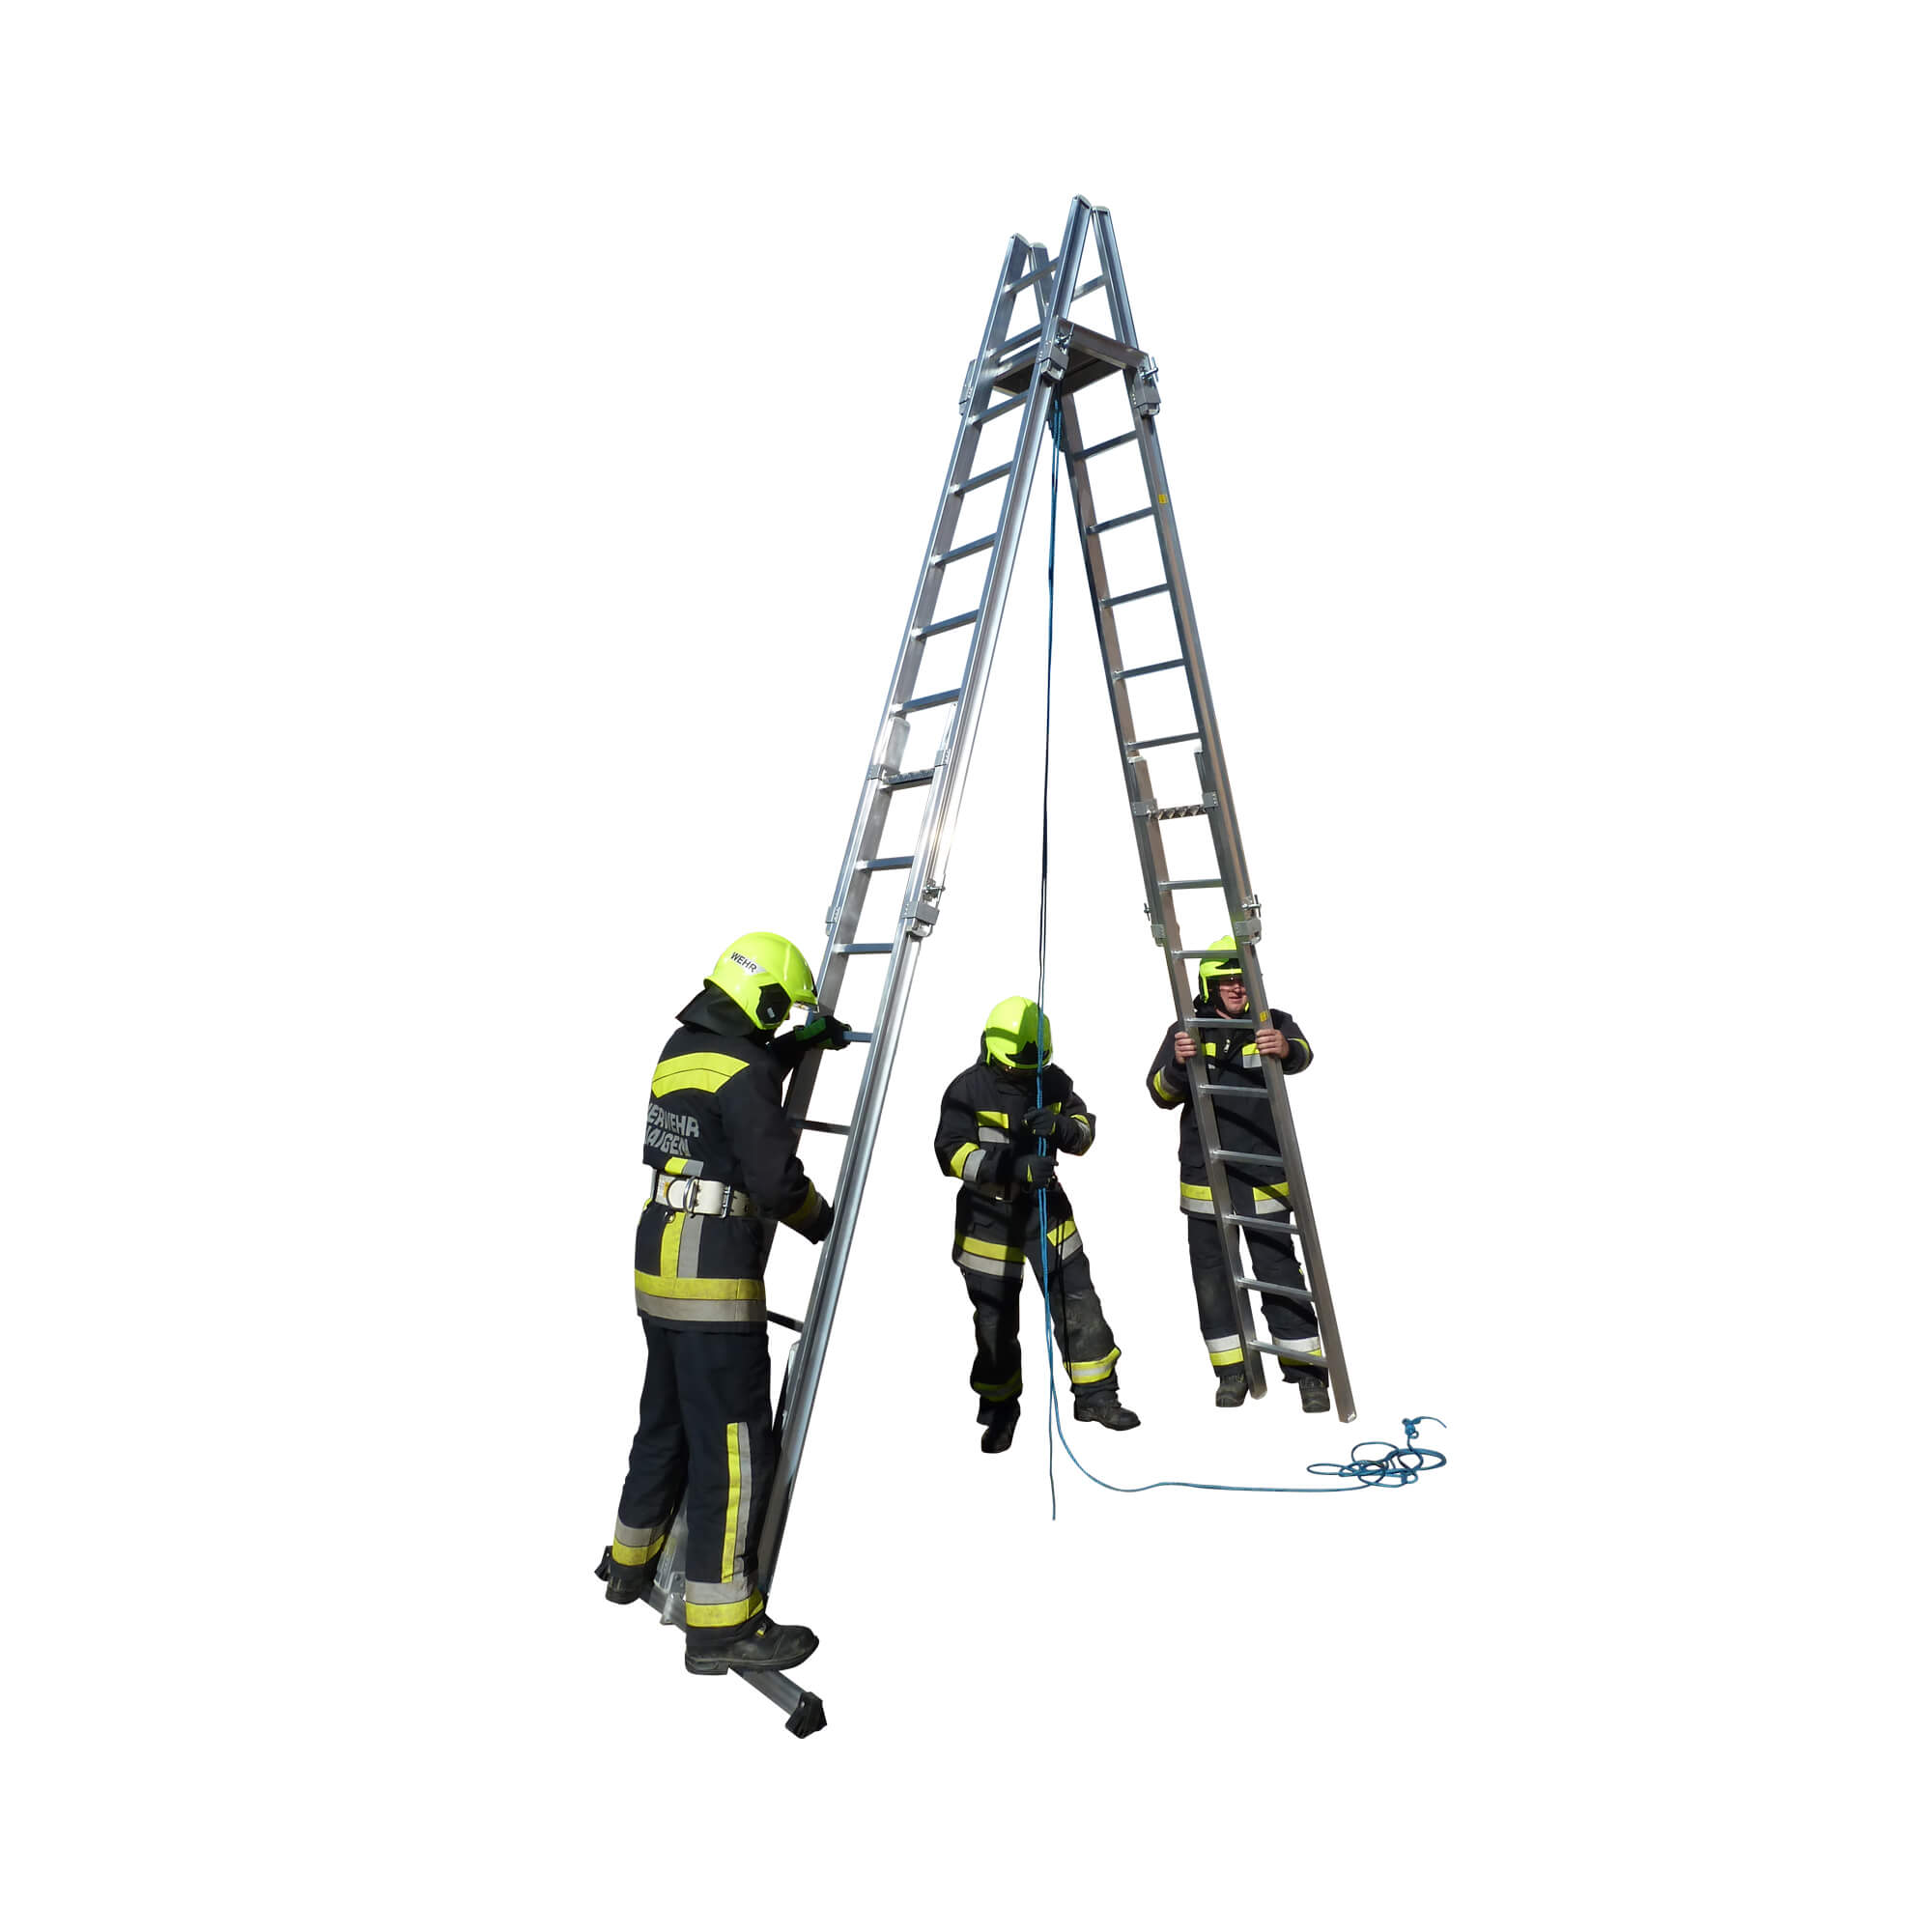 Aluminium scaling ladders